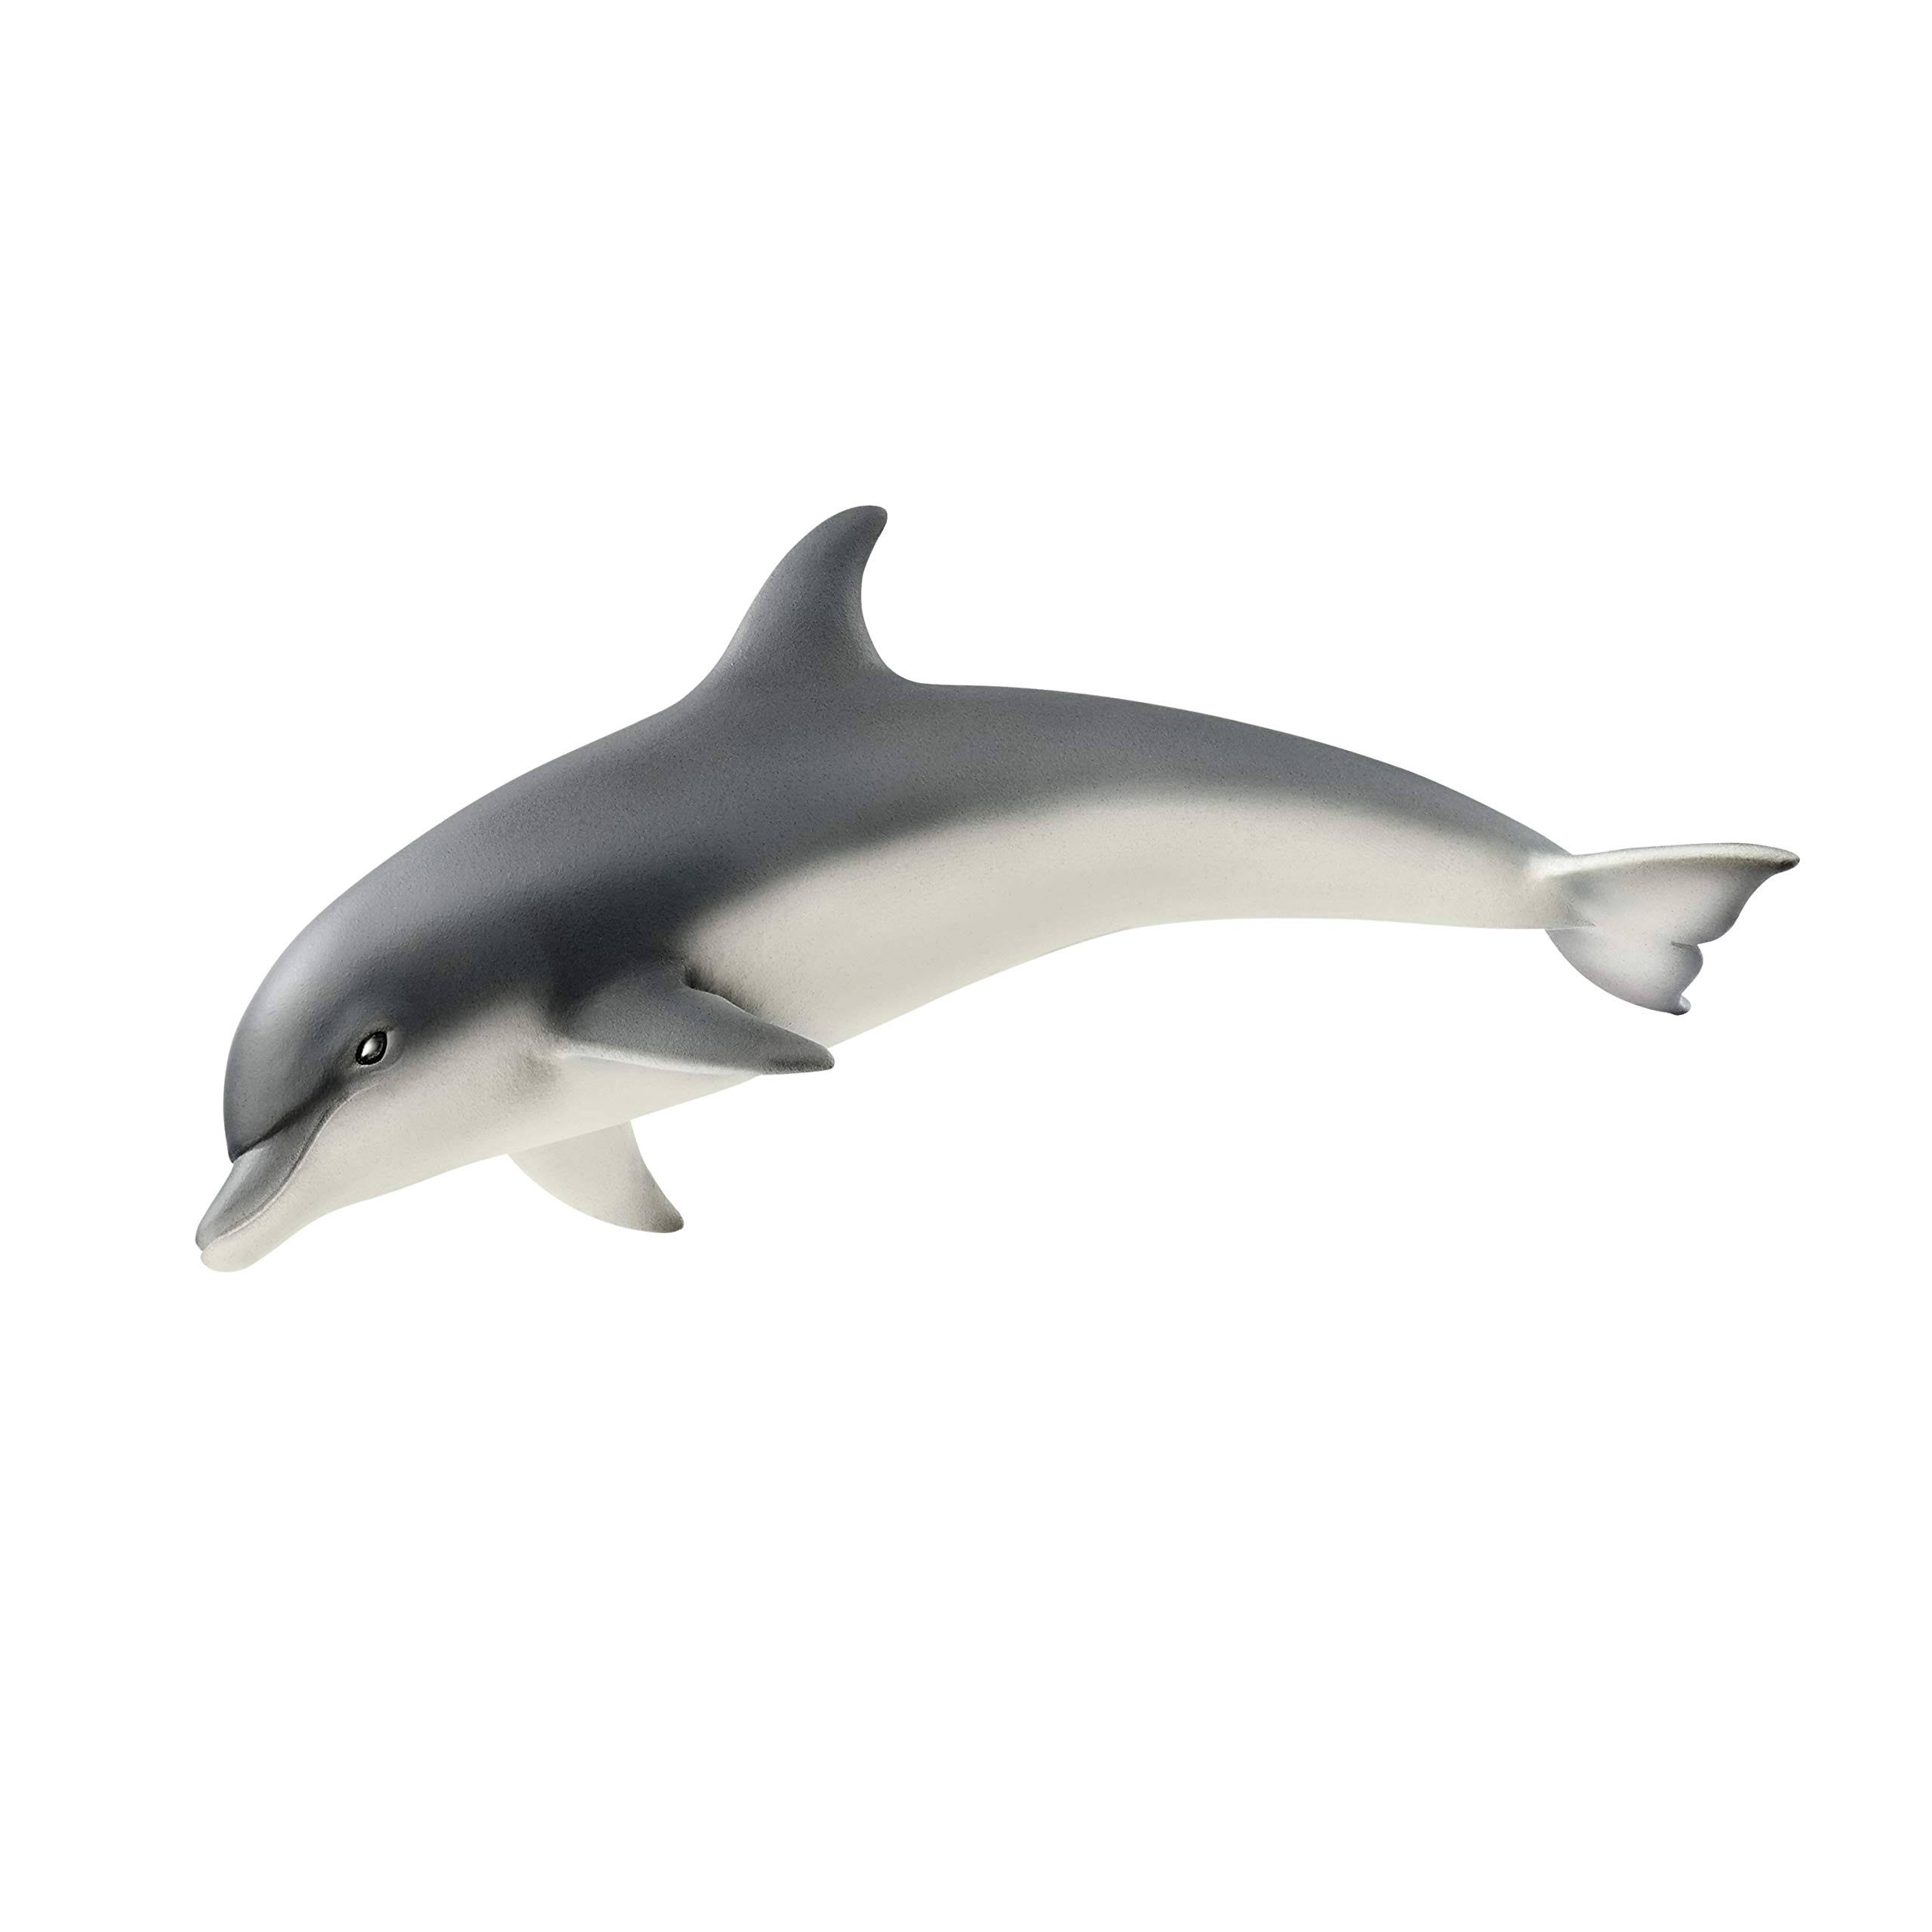 Schleich 14808 Dolphin Figure - 3.2cm x 4.3cm x 10.8cm